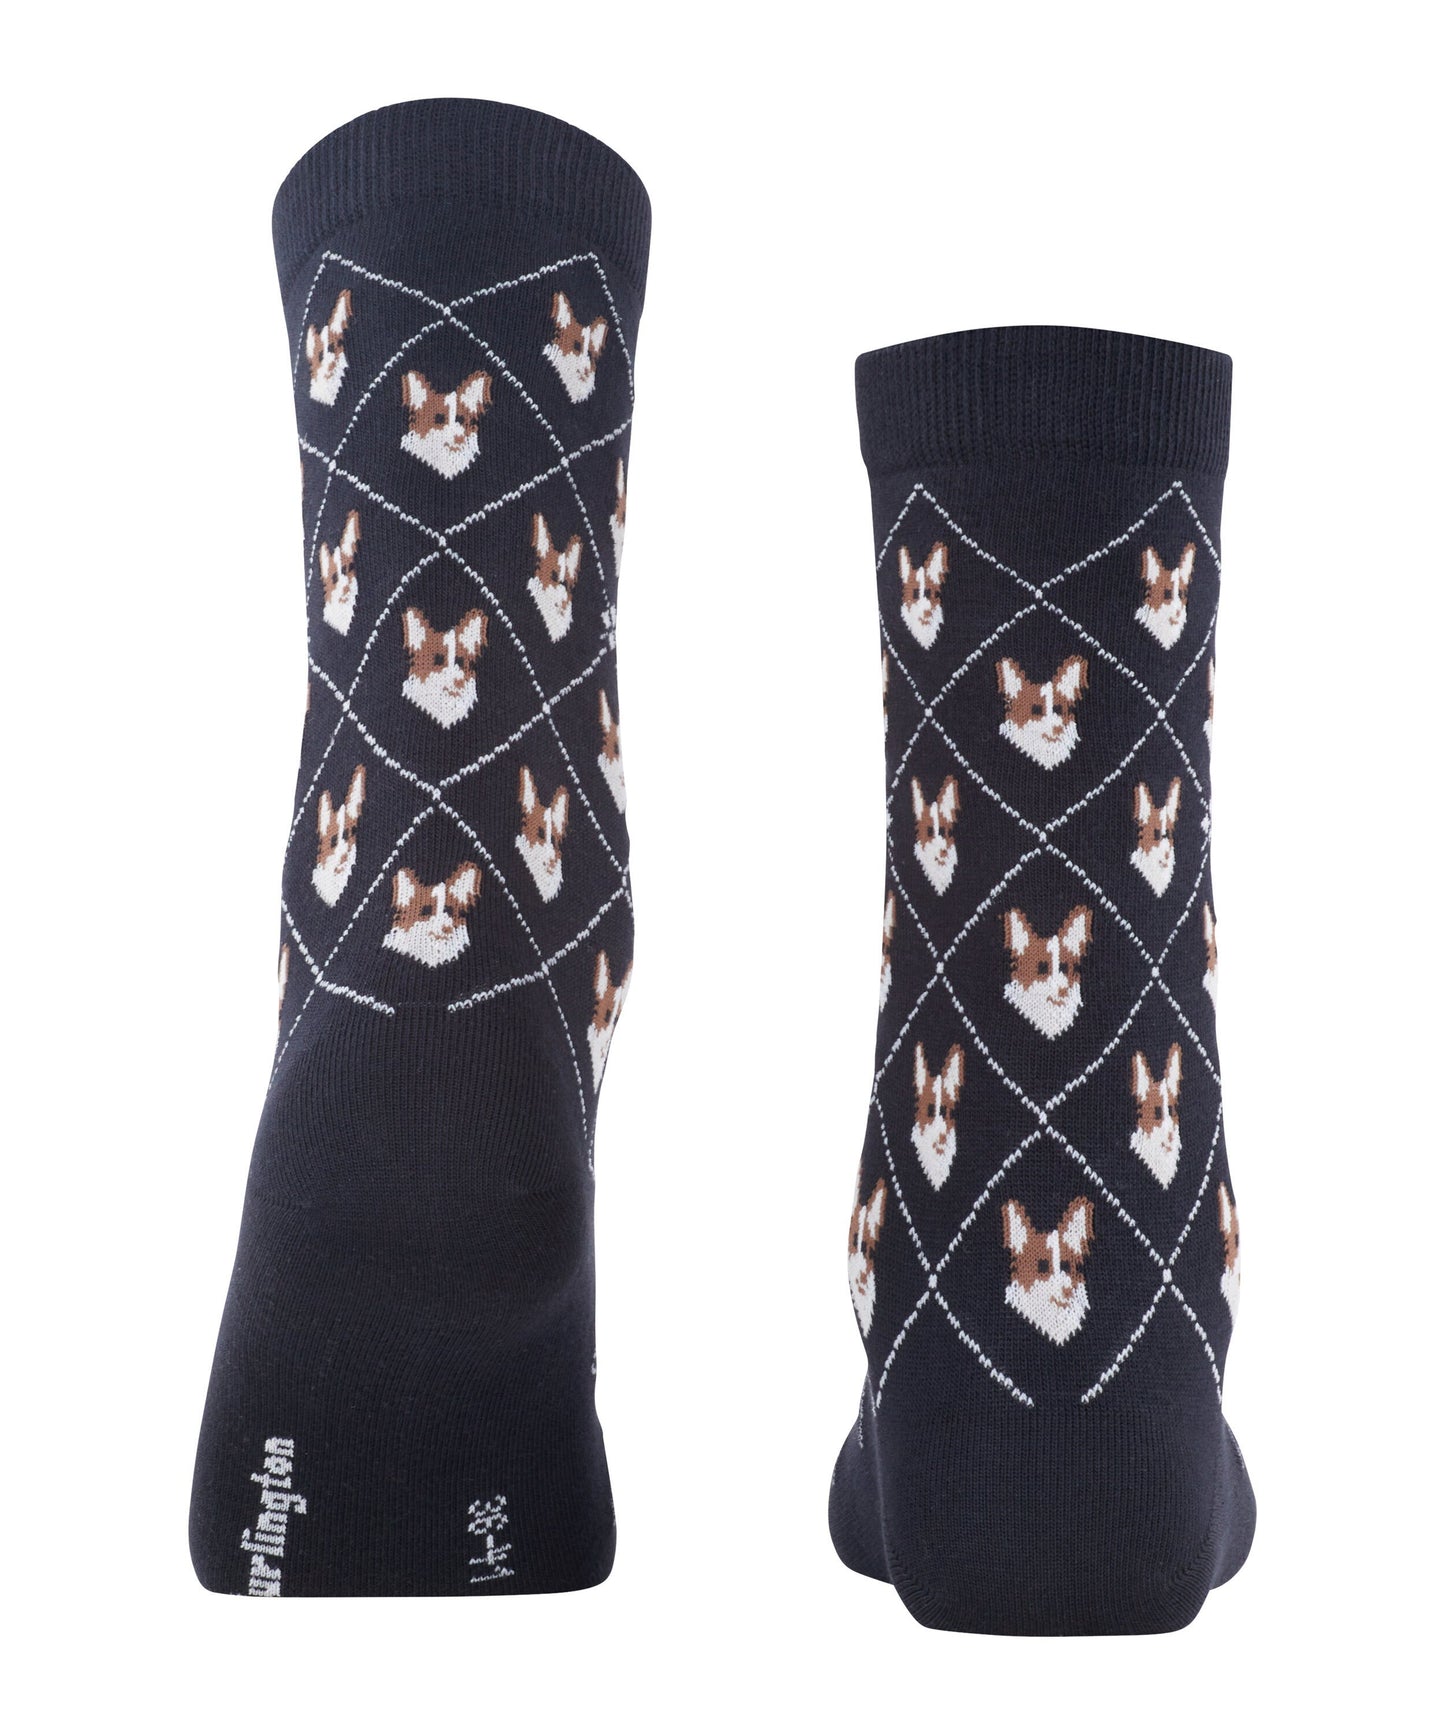 Burlington Corgi Damen Socken (Black)